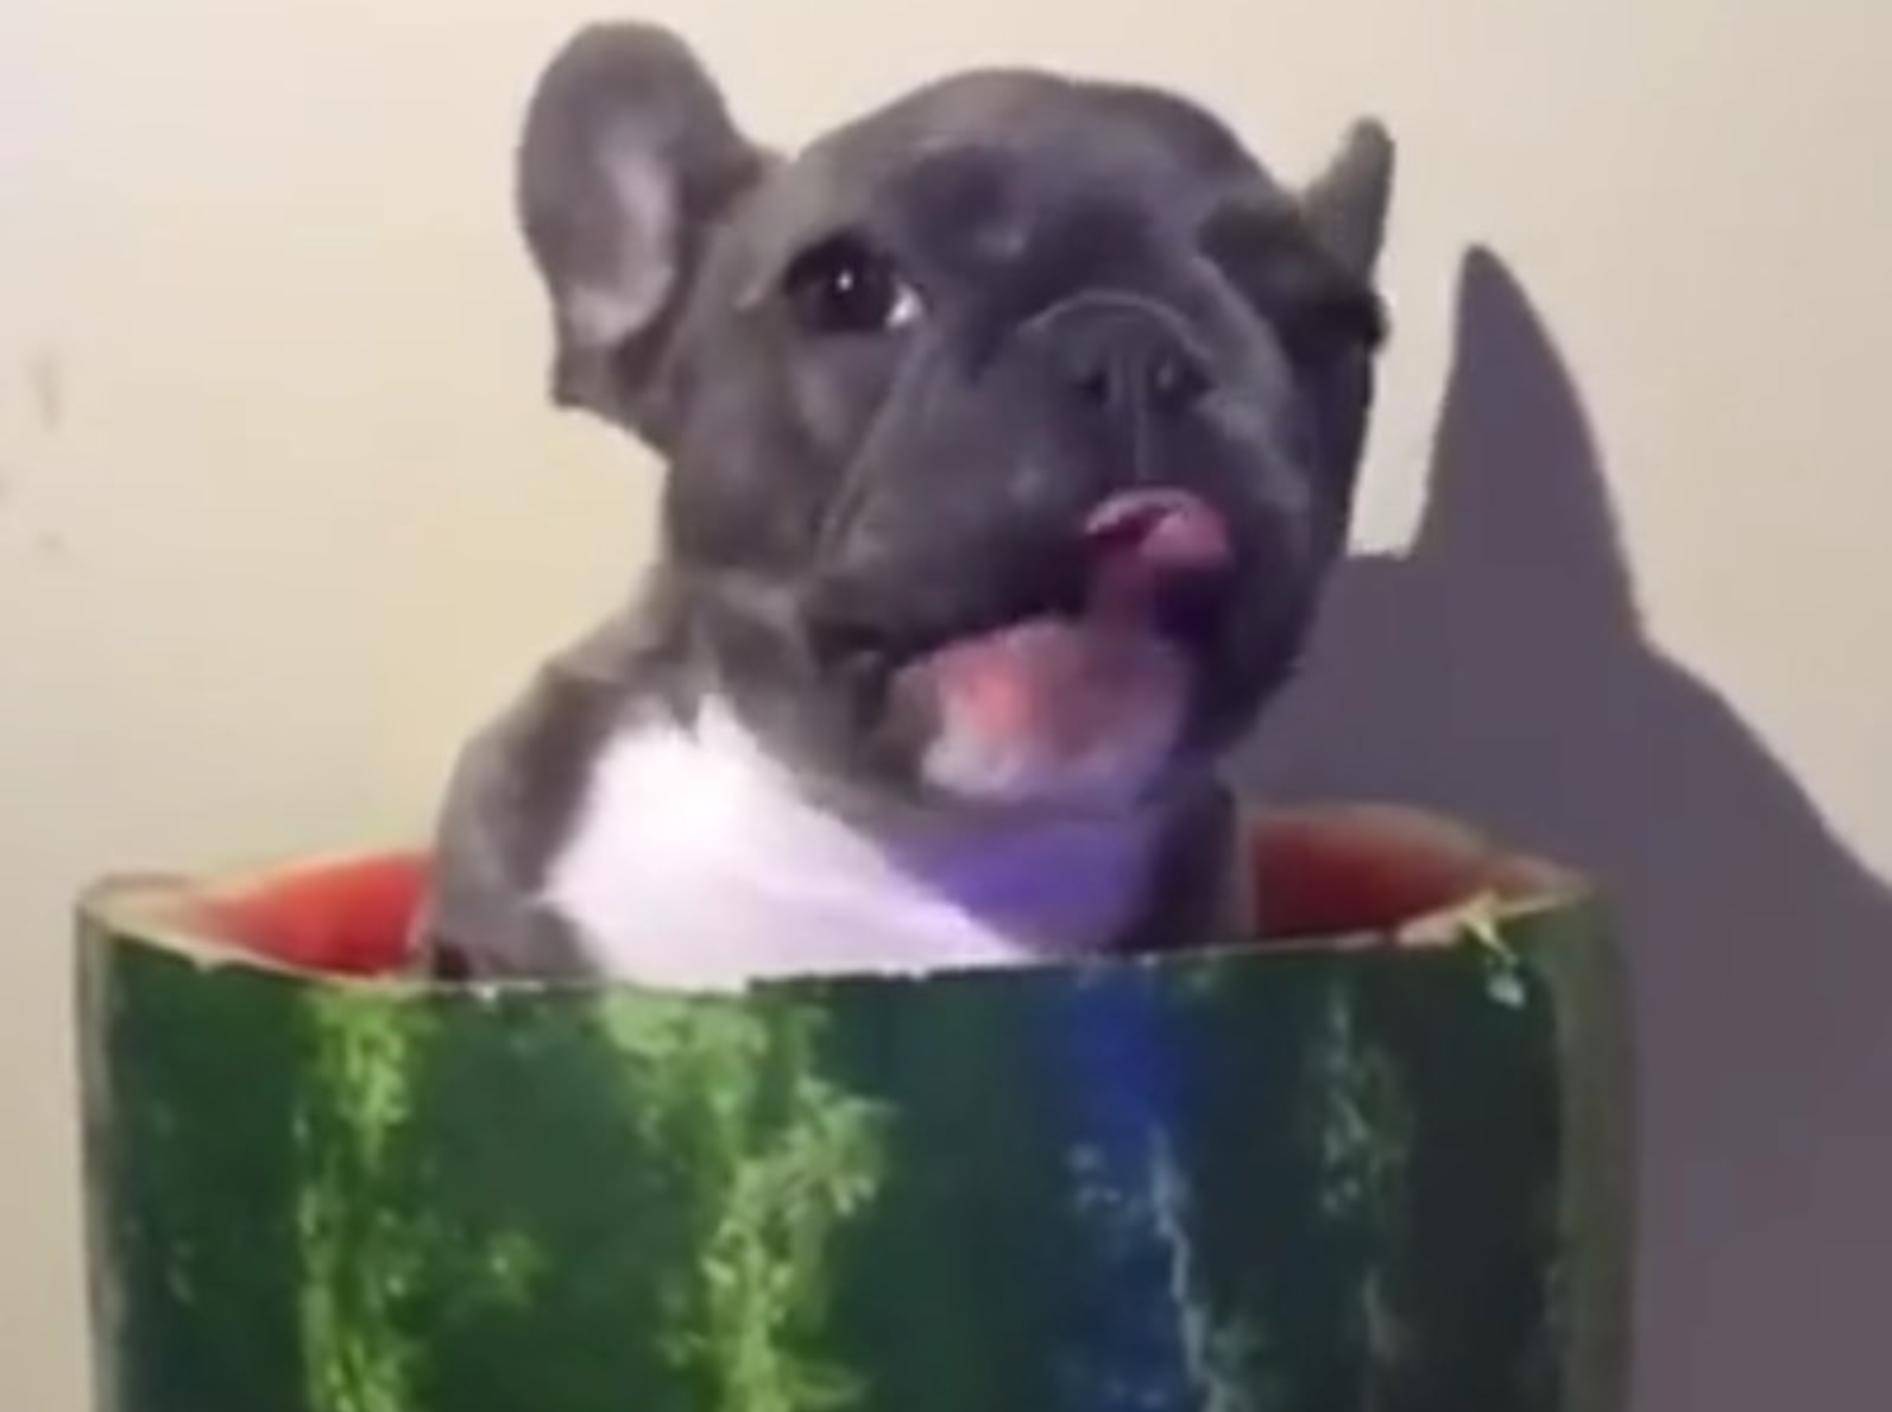 Diese Französische Bulldogge liebt ihr neues Esspielzeug: Eine Wassermelone – YouTube / DailyPicksandFlicks